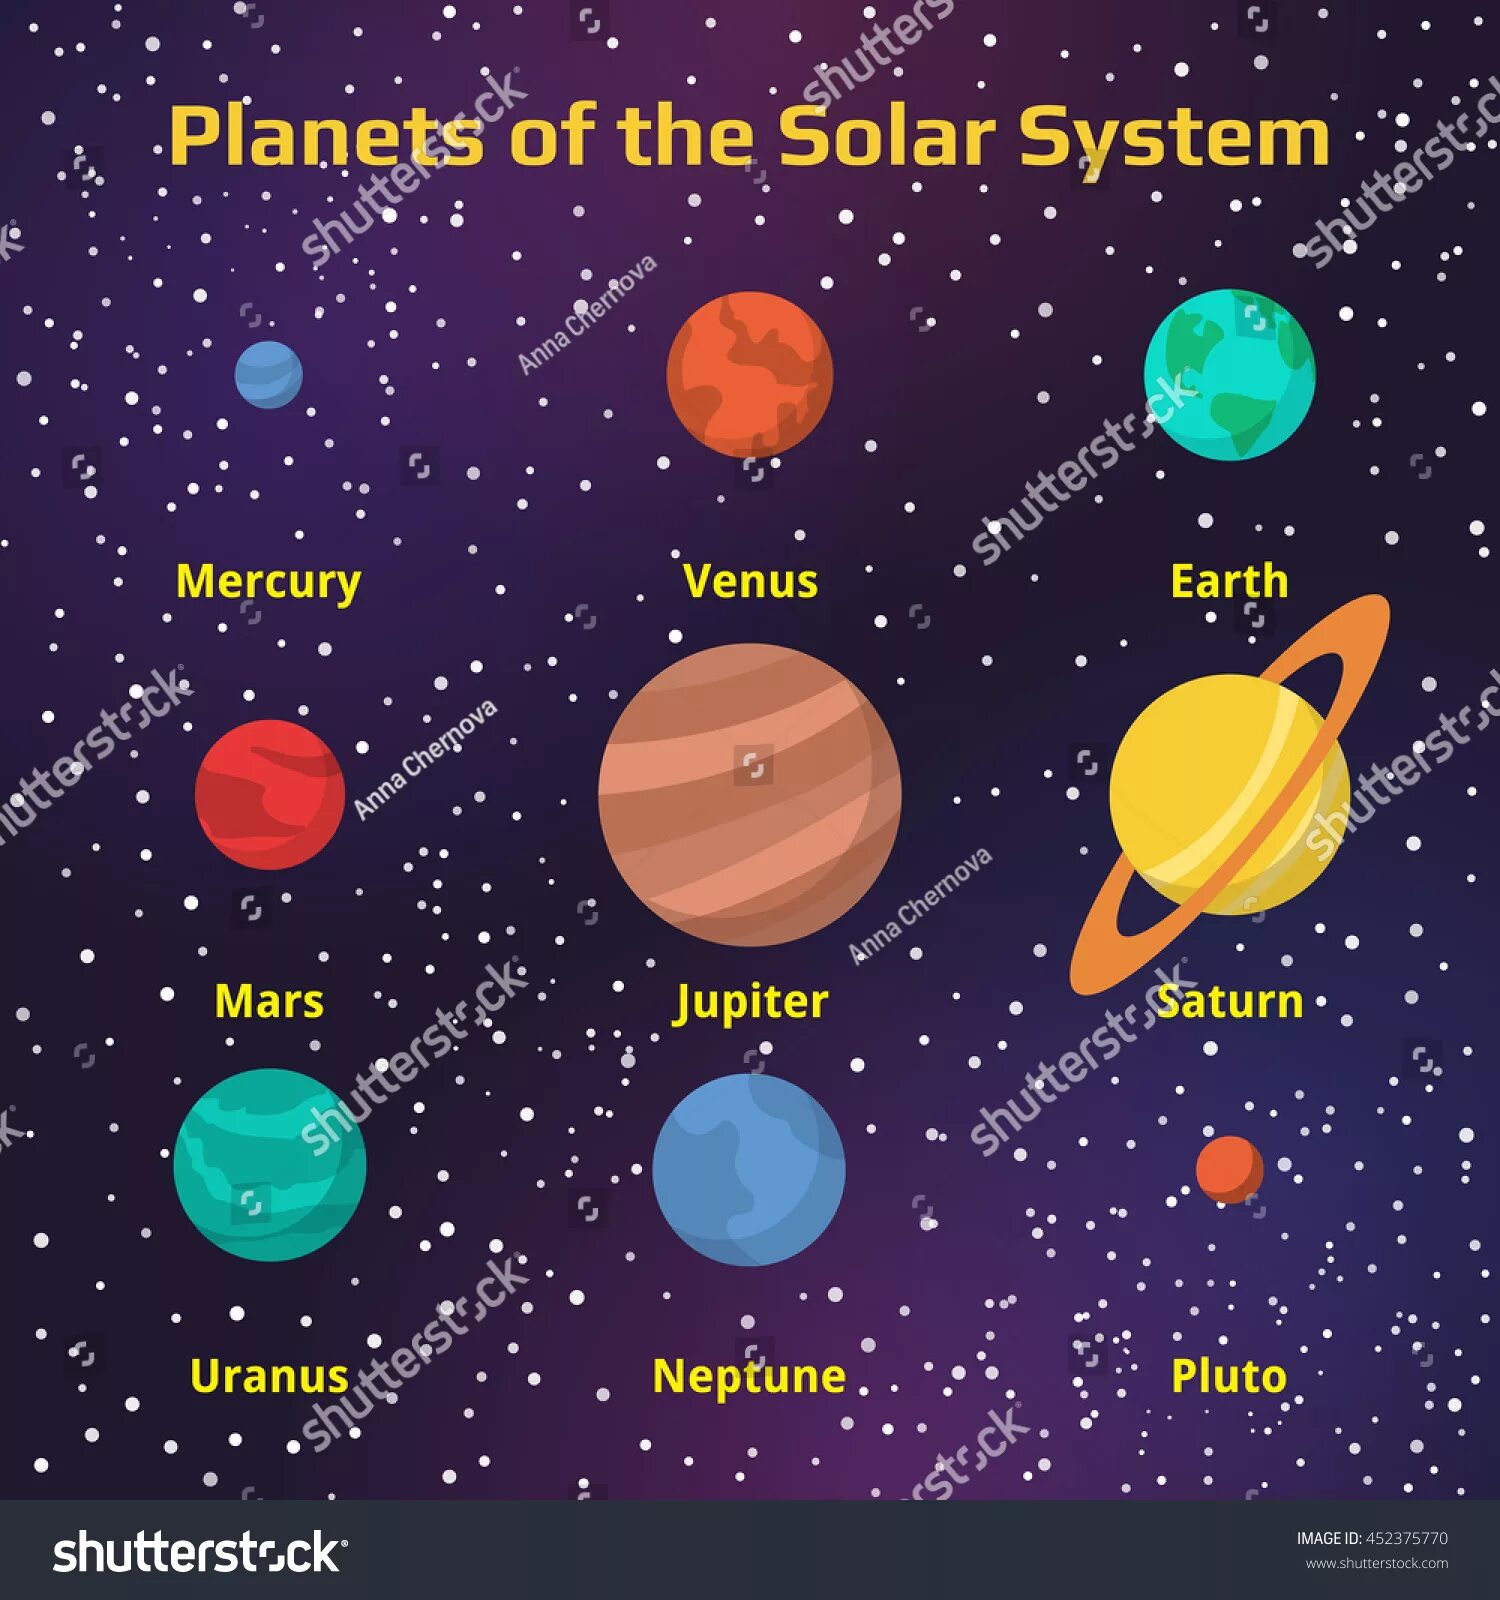 Планета пишется с большой. Планеты солнечной системы. Солнечная система с названиями планет. Планеты с именами. Названия планет солнечной системы на латыни.